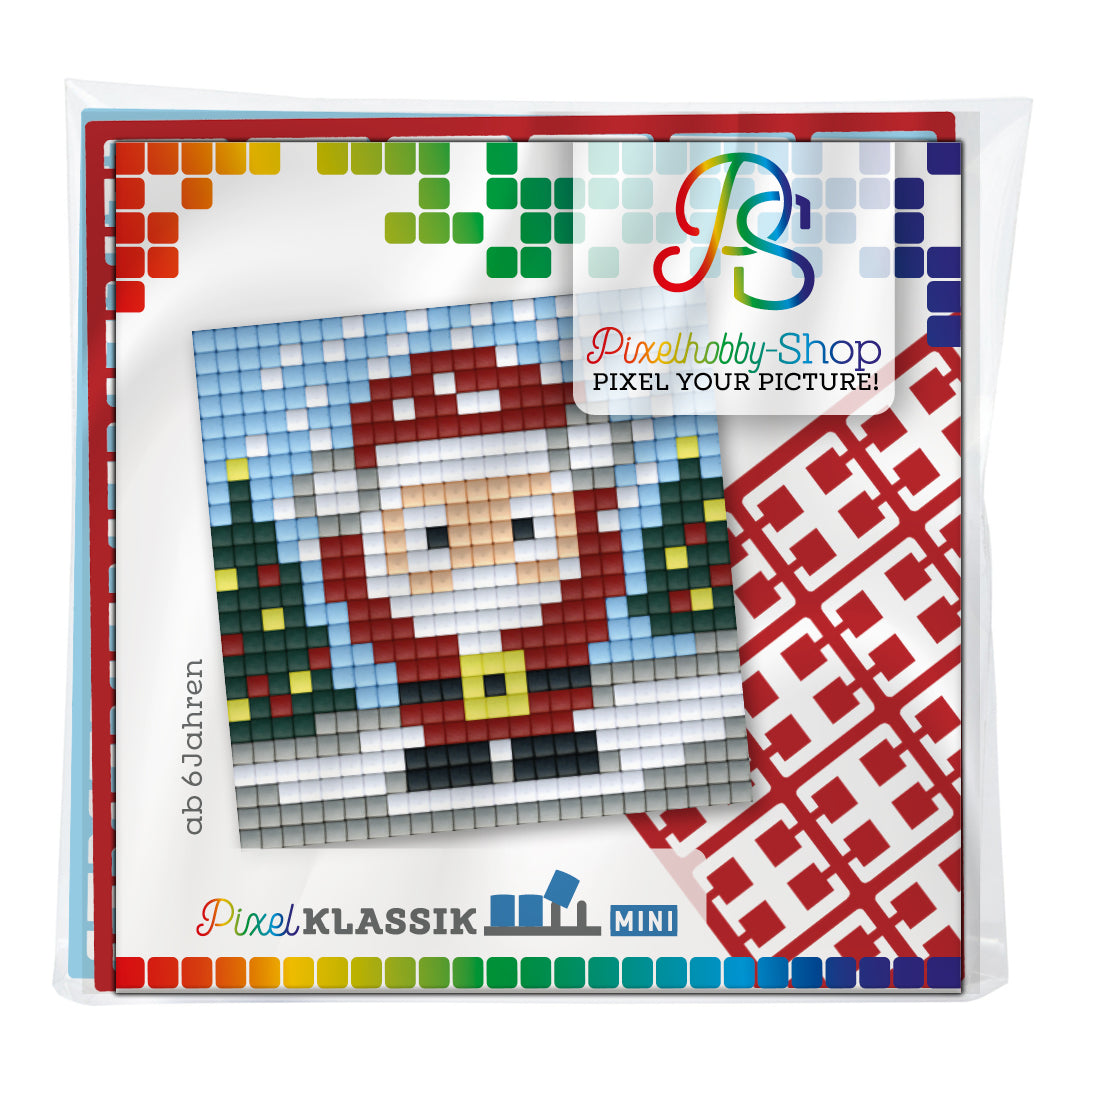 Pixelhobby Classic (Mini) Magnet Set - Jipi Christmas